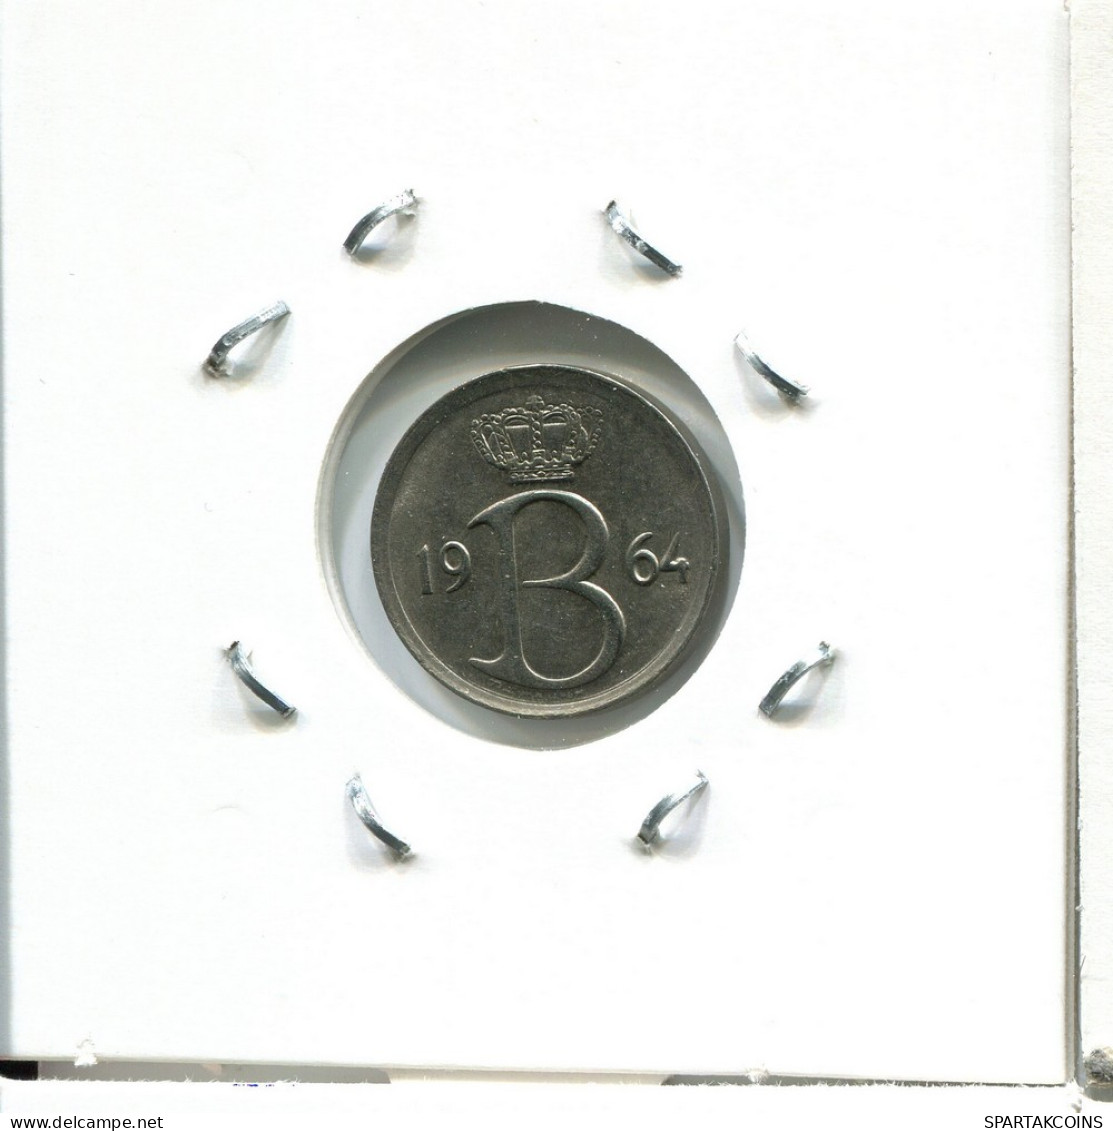 25 CENTIMES 1964 DUTCH Text BELGIUM Coin #AU604.U - 25 Centimes